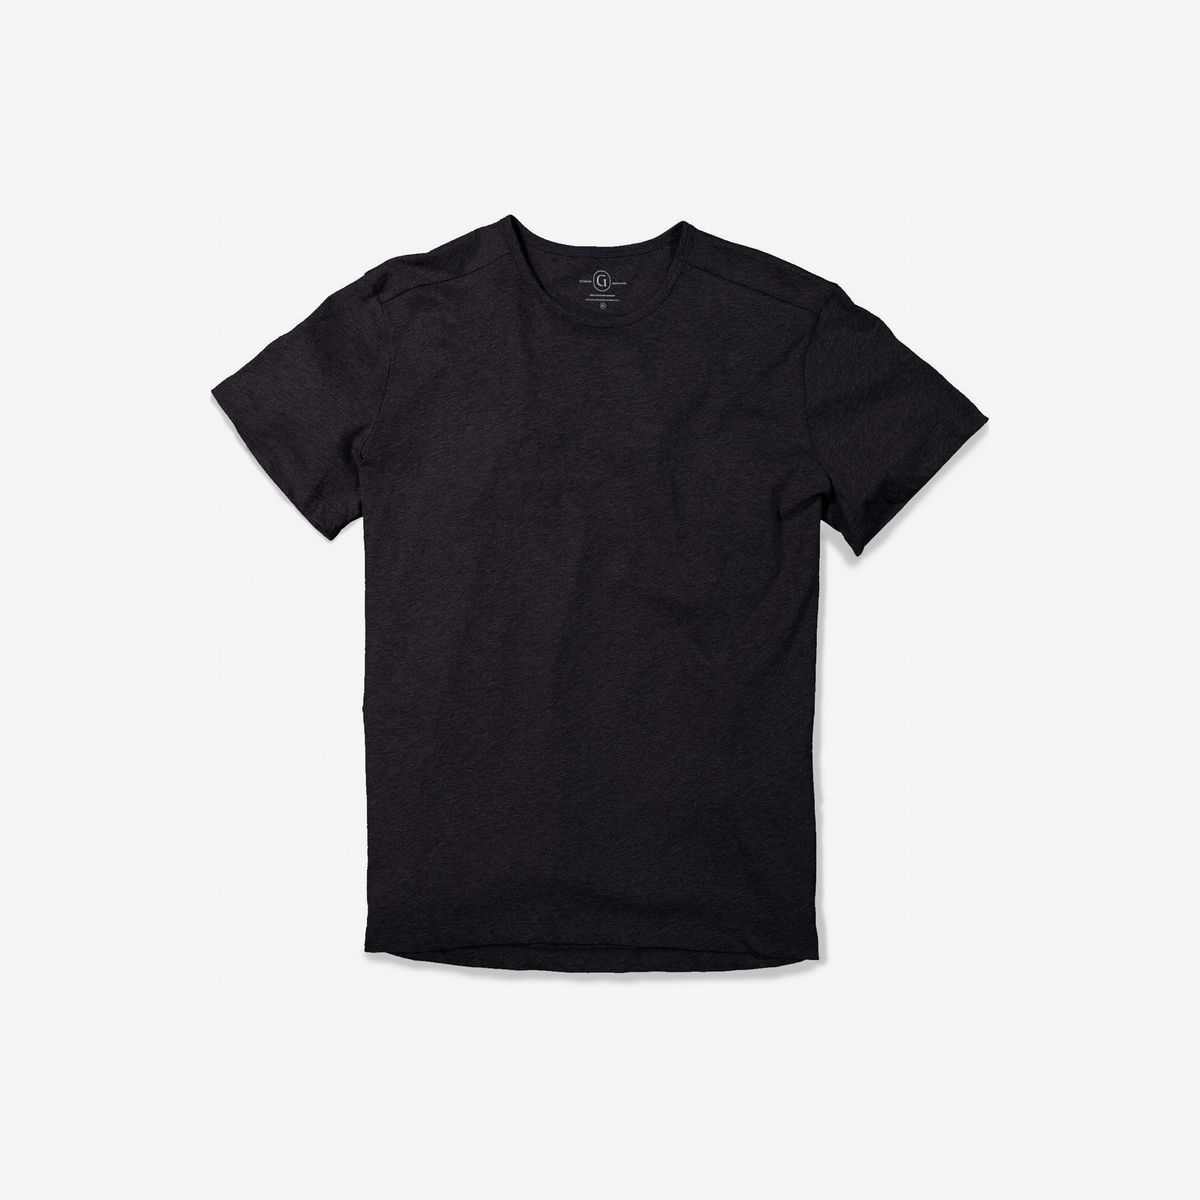 Best Black Tee Shirts Deals, 55% OFF | www.ingeniovirtual.com